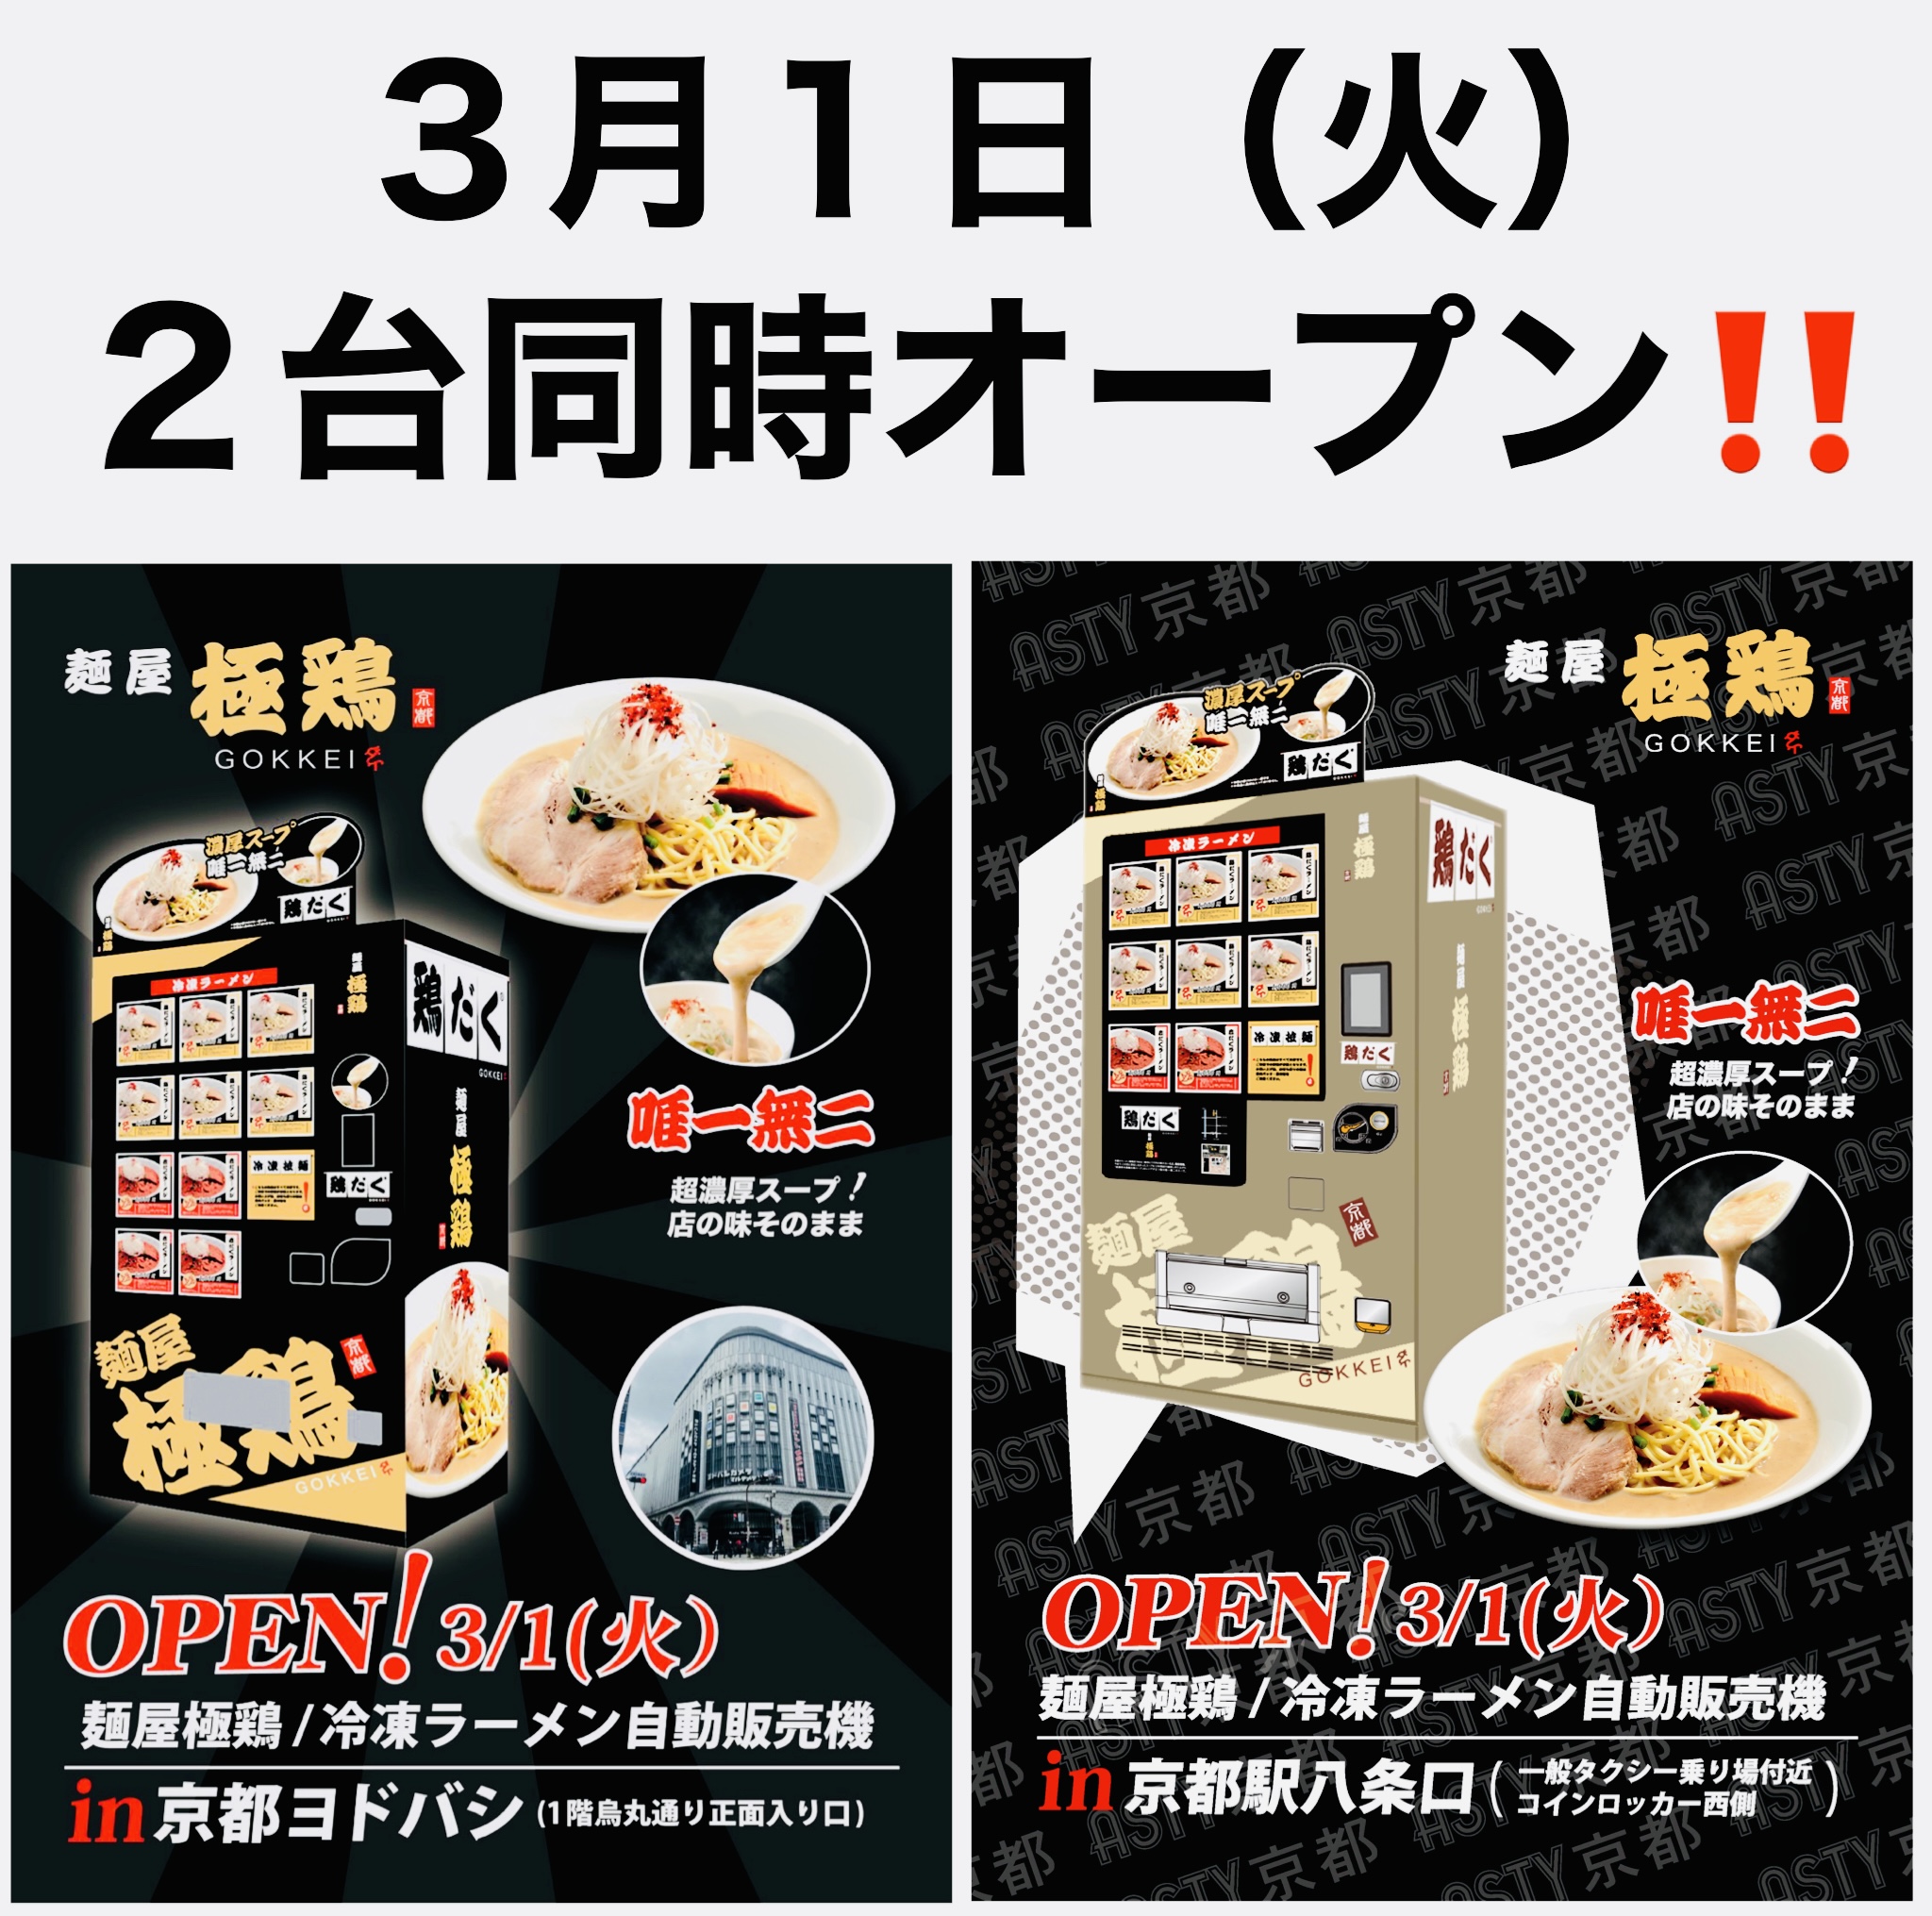 【麺屋 極鶏®︎冷凍ラーメン自販機】2台同時オープン‼️